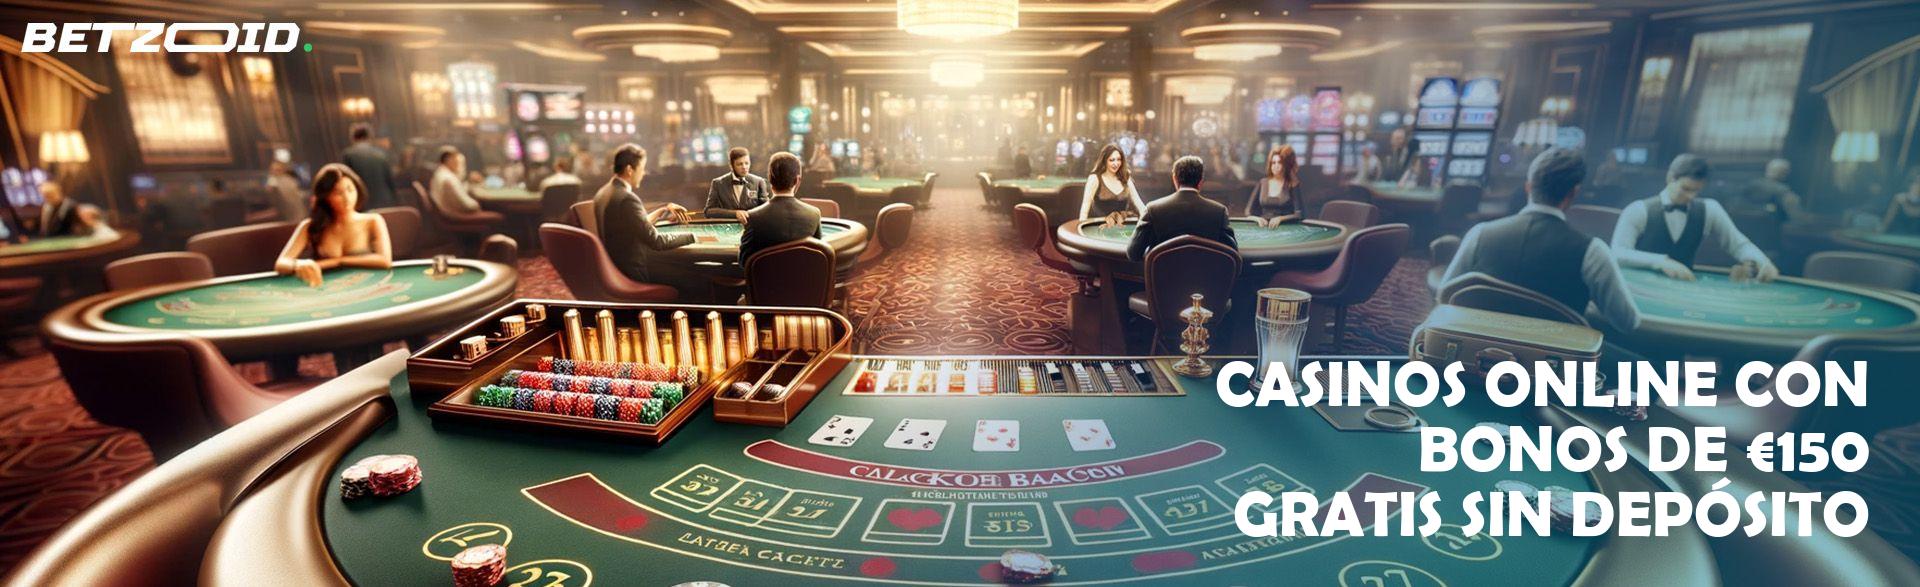 Casinos Online con Bonos De €150 Gratis sin Depósito.